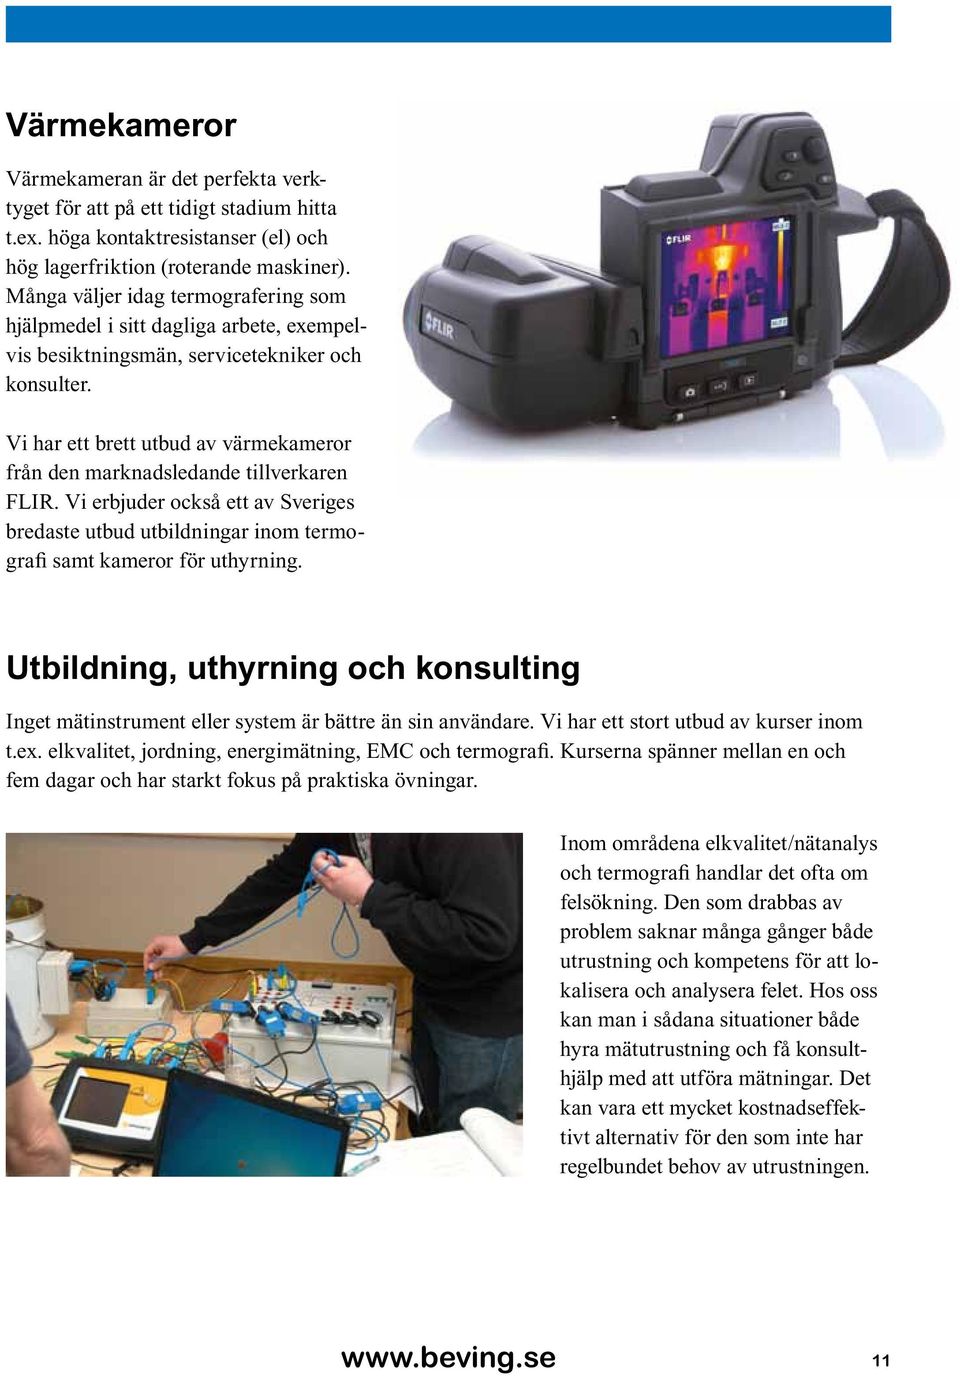 Vi har ett brett utbud av värmekameror från den marknadsledande tillverkaren FLIR. Vi erbjuder också ett av Sveriges bredaste utbud utbildningar inom termografi samt kameror för uthyrning.